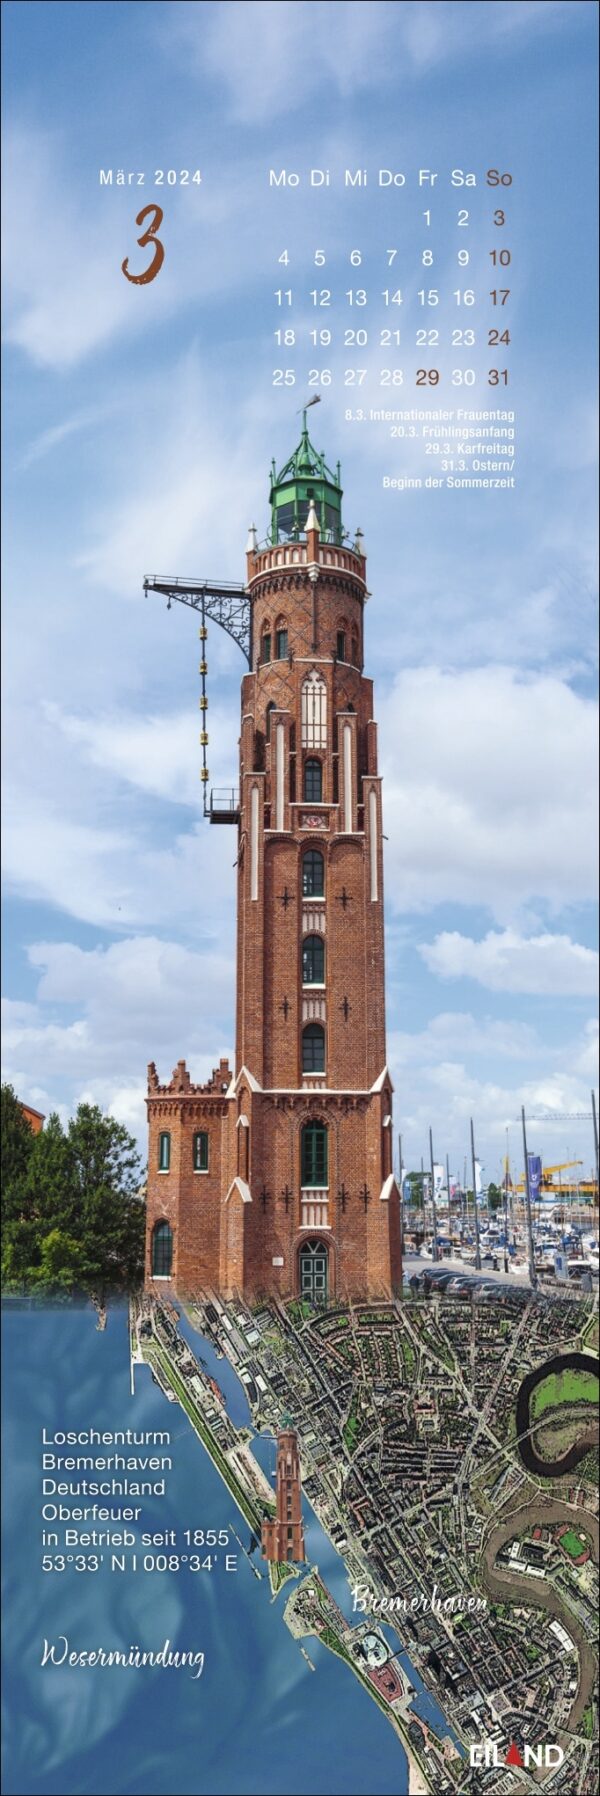 Ein LilleEiland - Kalender 2024 mit einem Bild eines Turms für das Jahr 2024.